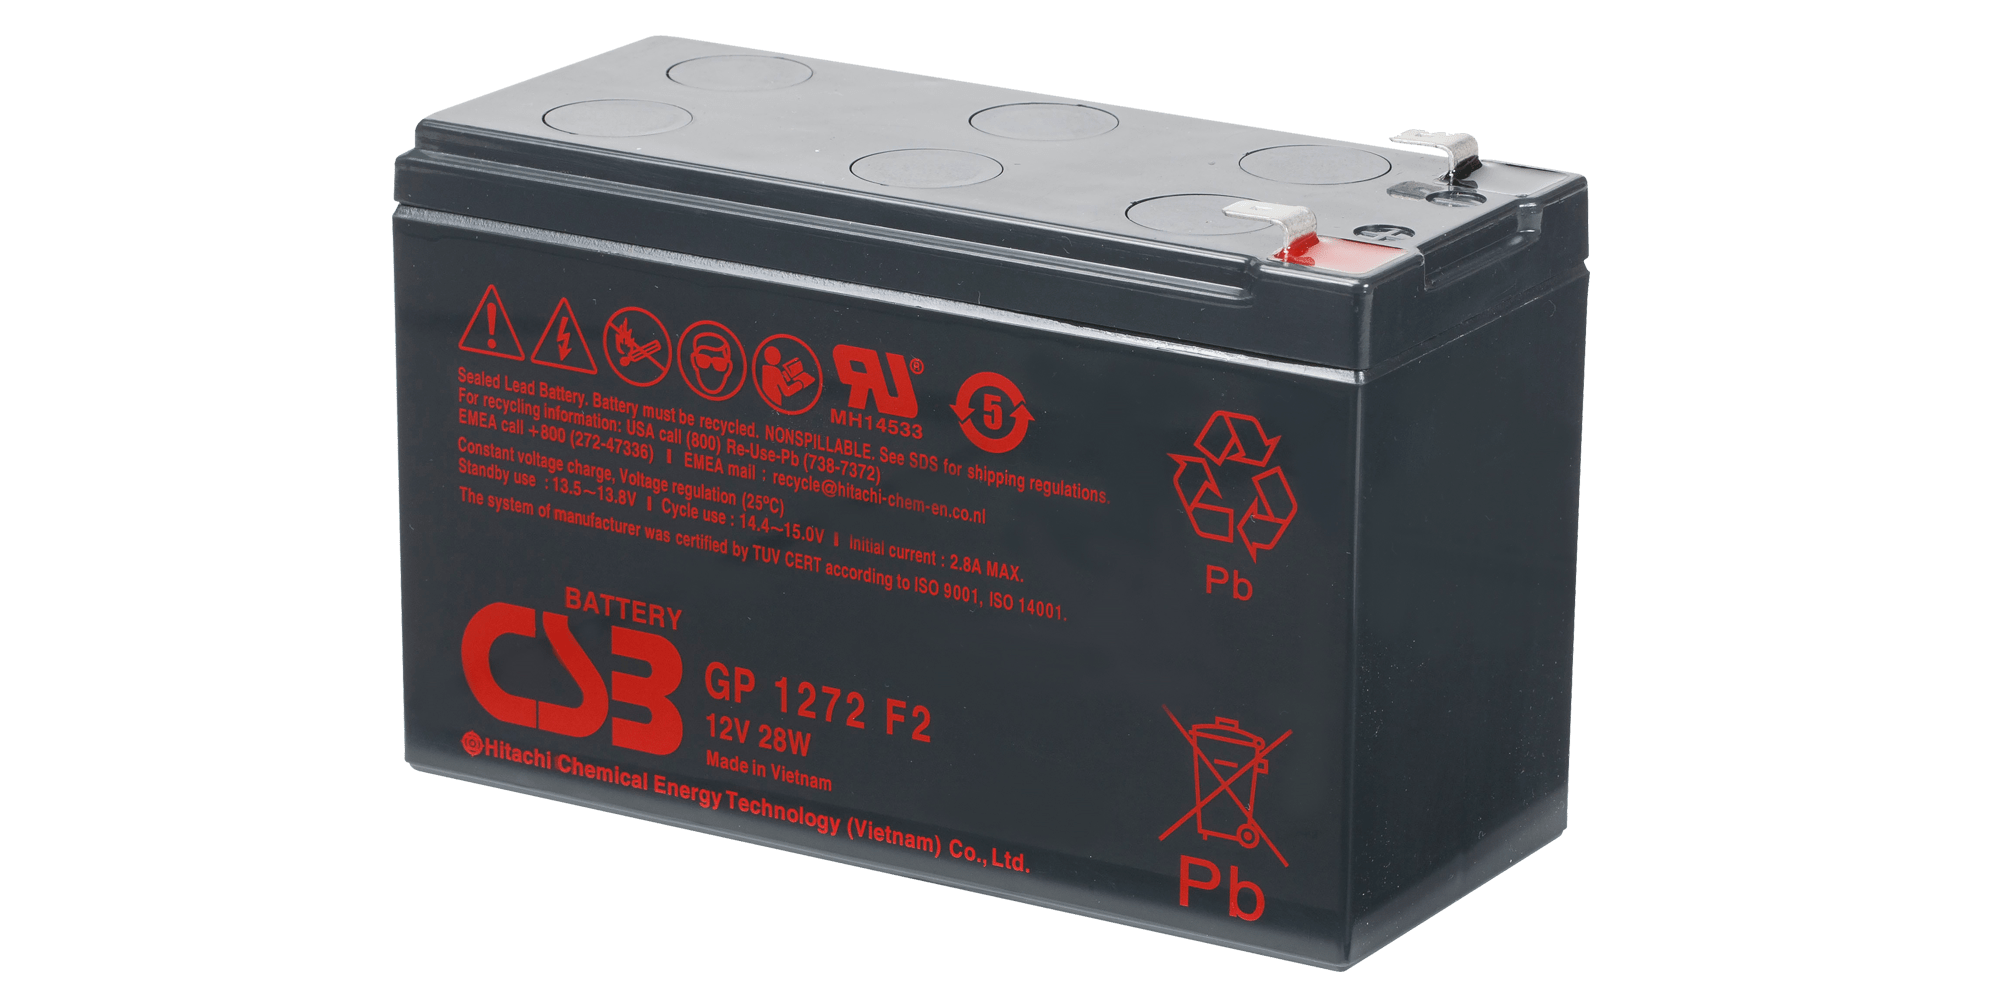 Bateria GP1272 F2 12VDC 7,2Ah para nobreaks - CSB longa vida 5 anos - SMS CSB - Baterias